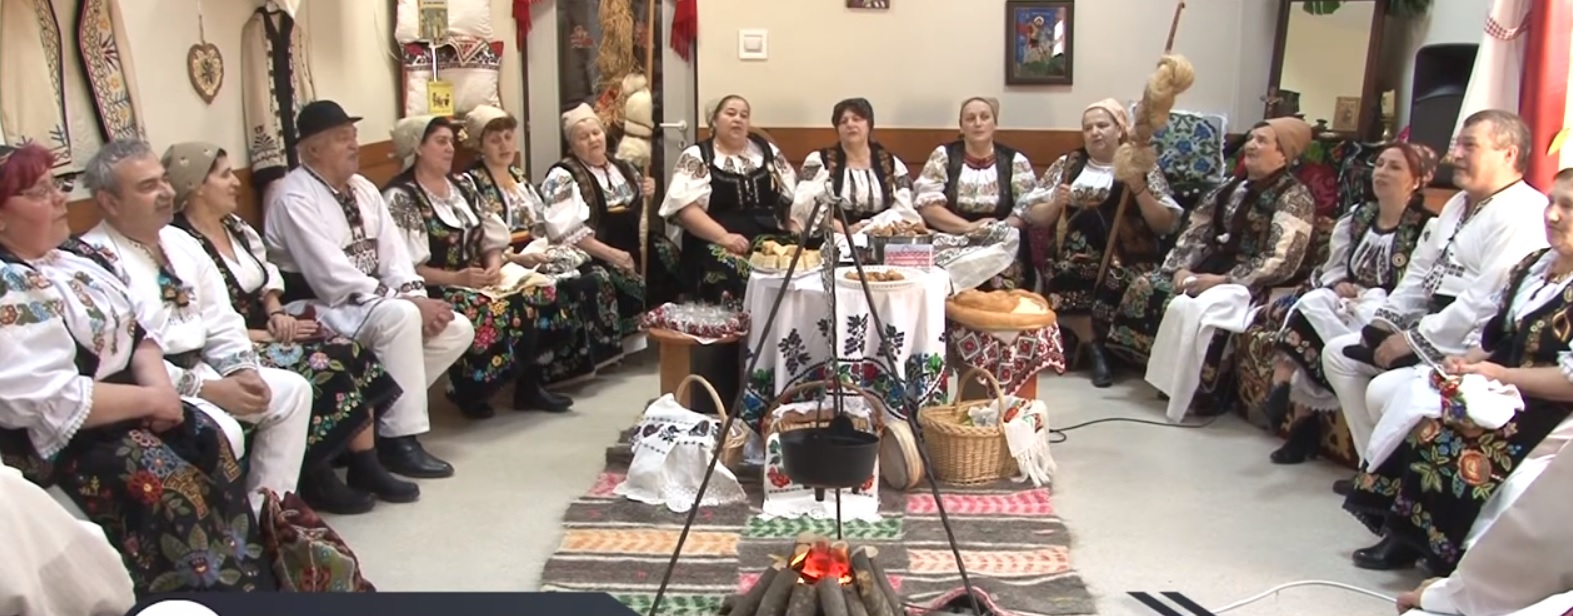 Grupul folcloric Ibășteana: De Dragobete, cu șezătoarea la Căminul pentru persoane vârstnice, din Târgu Mureș